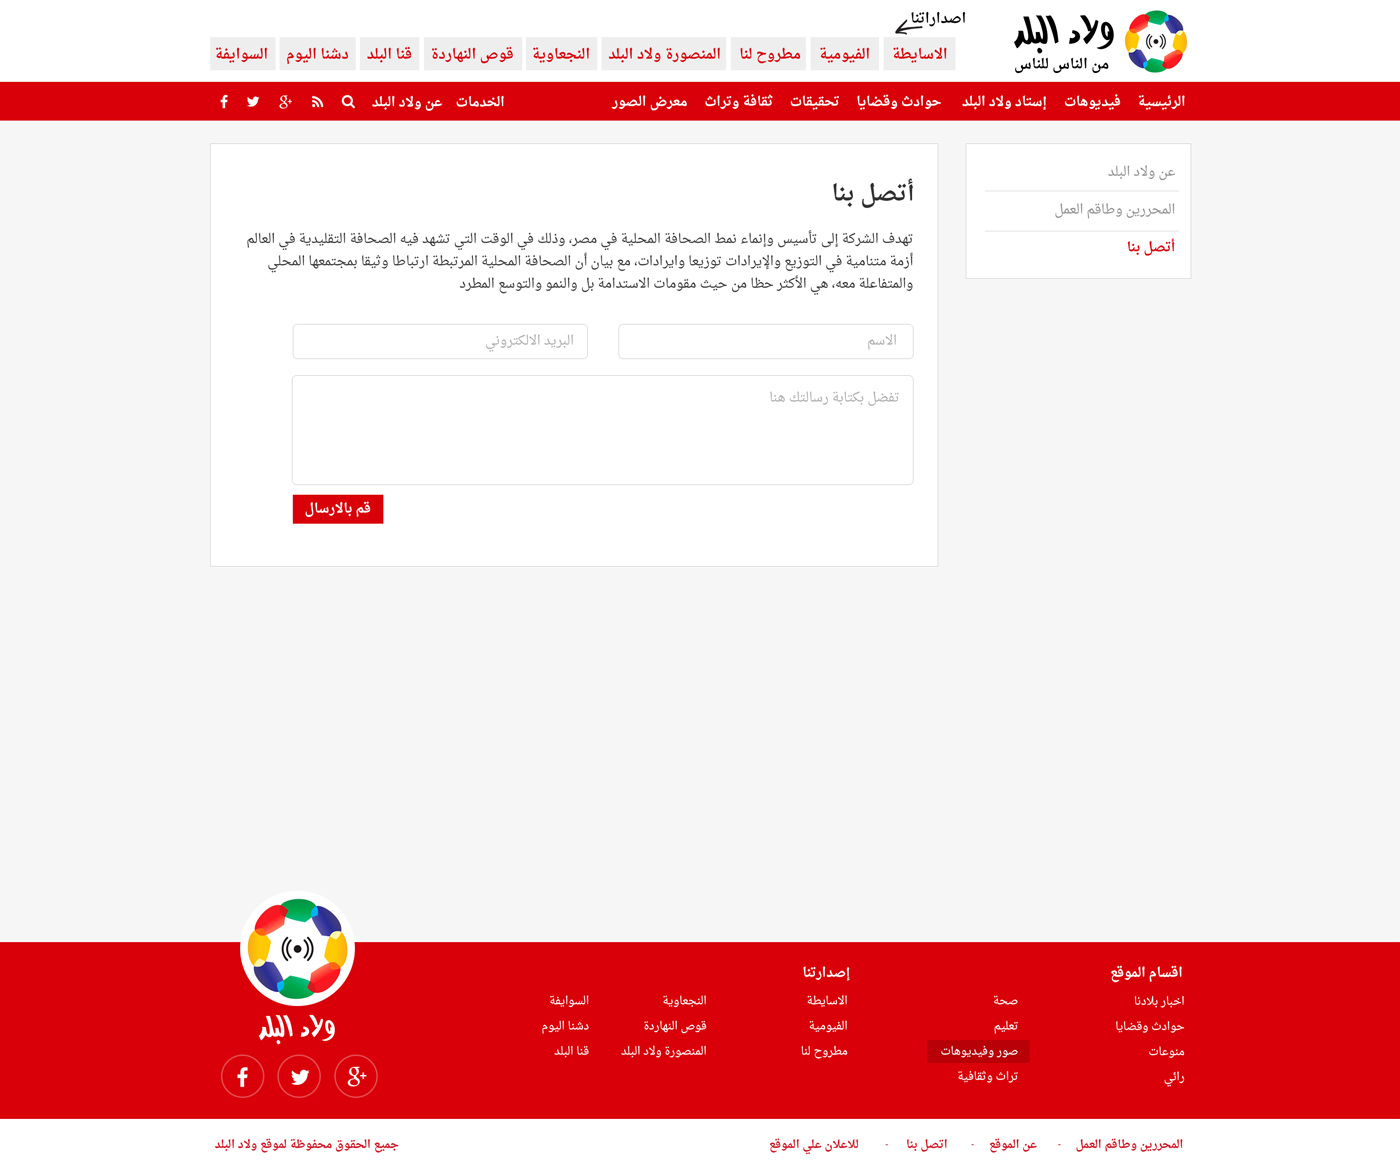 news News Portal portal arabic